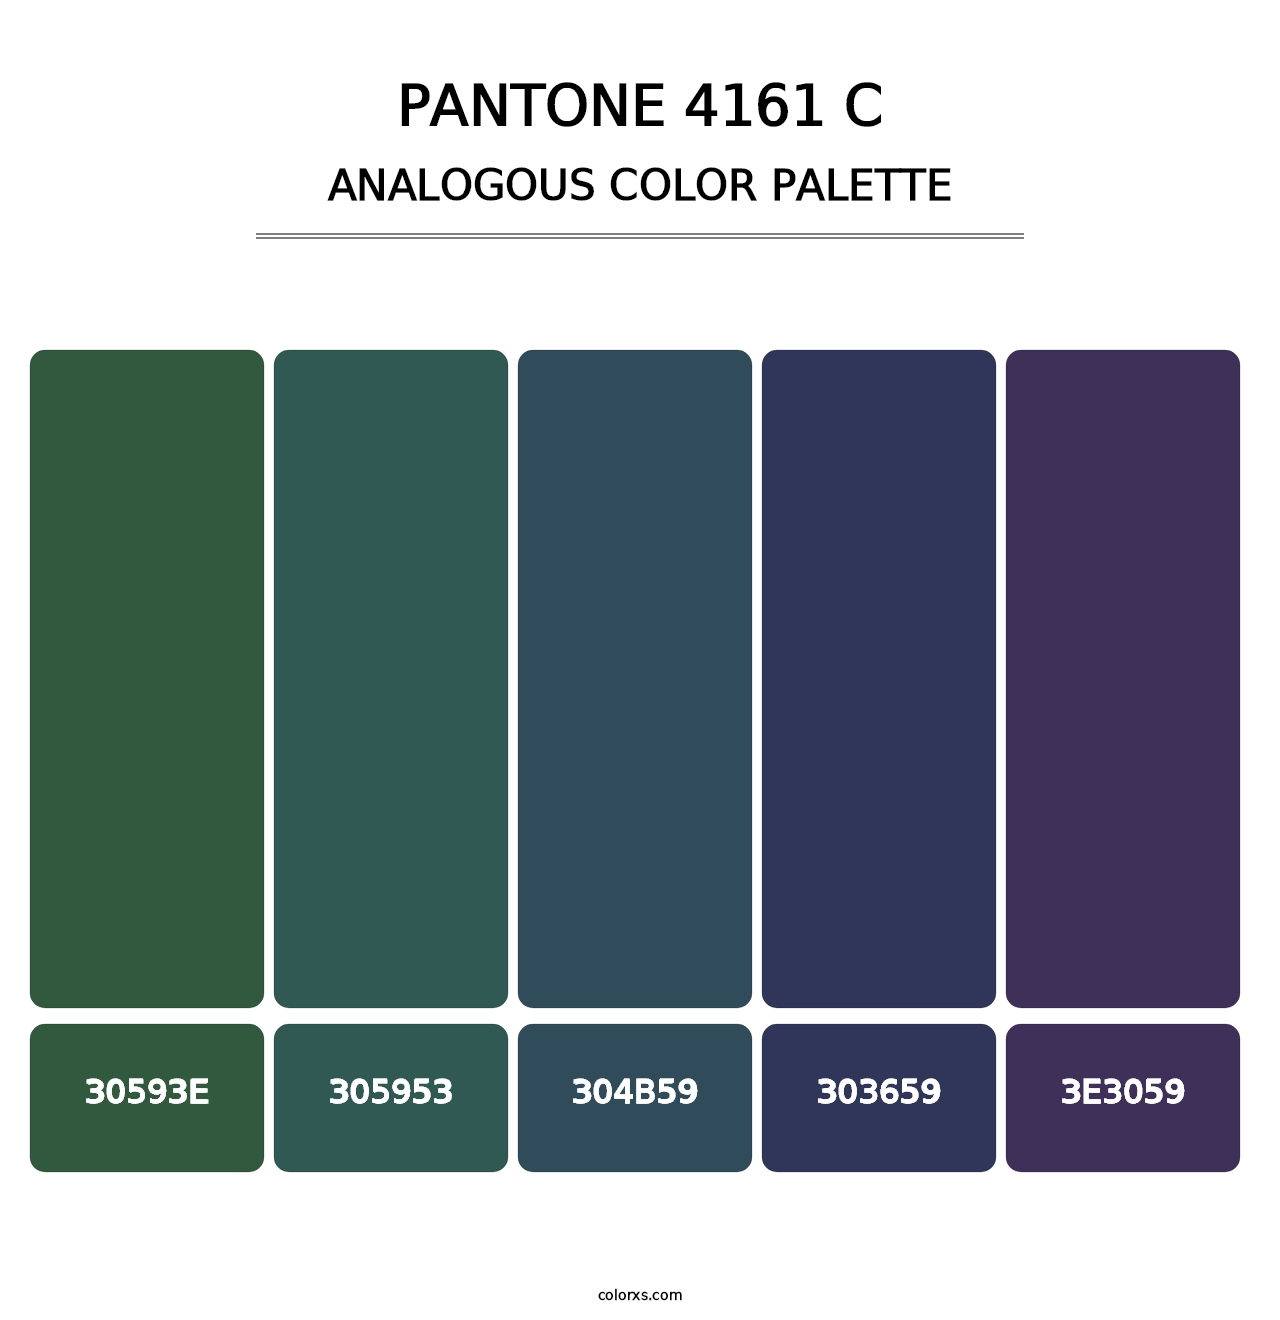 PANTONE 4161 C - Analogous Color Palette